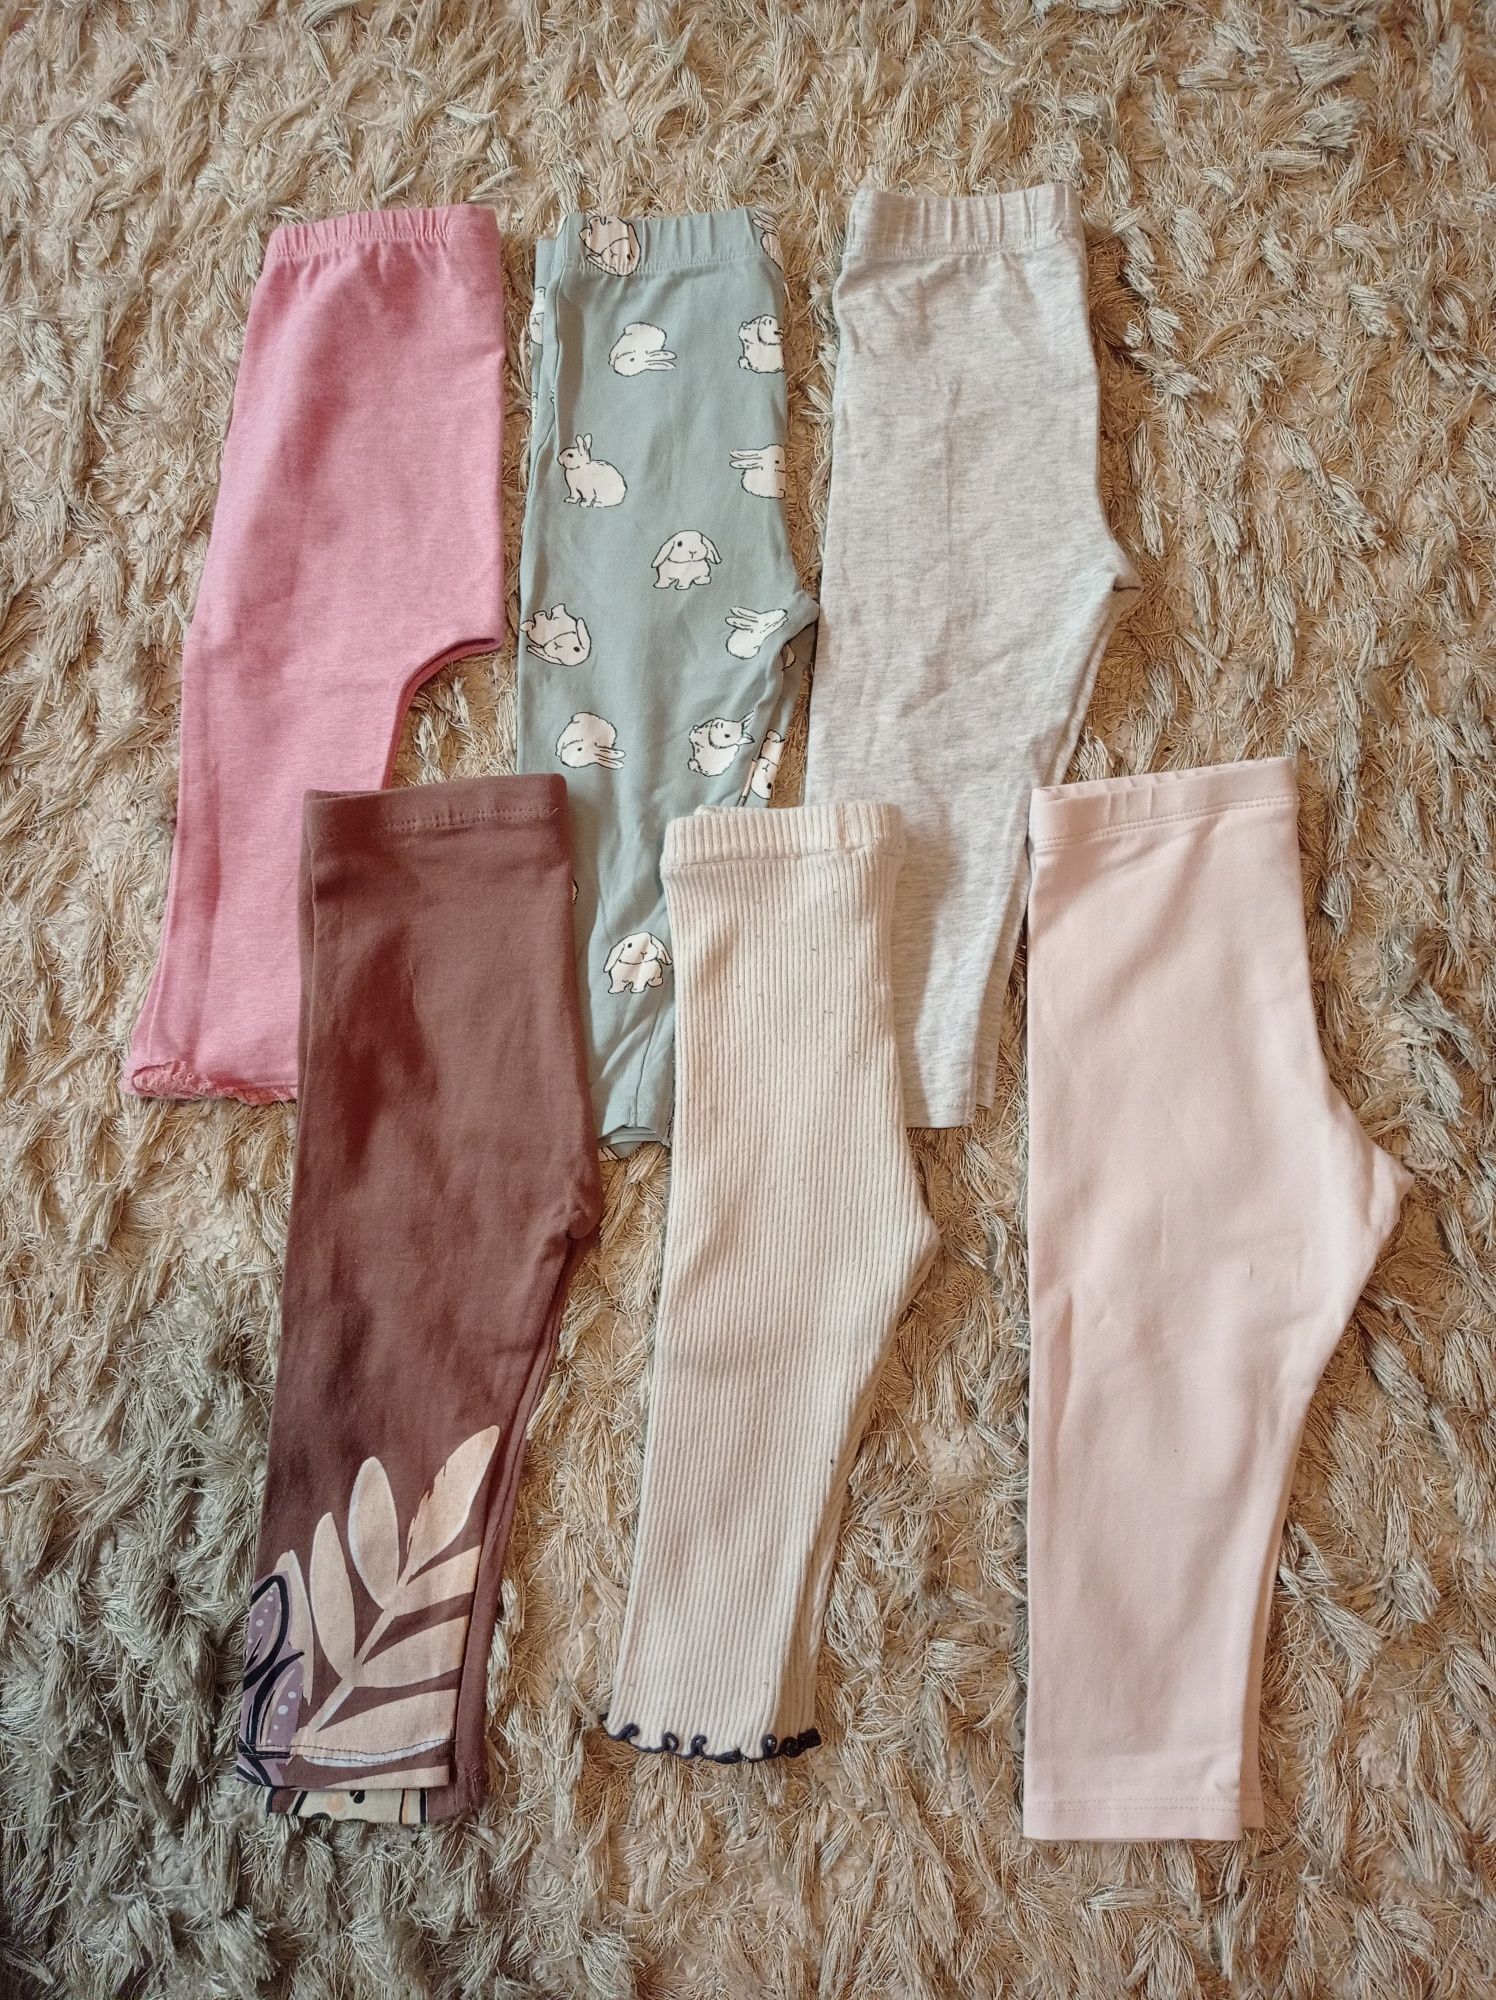 Paka spodni, spodenek. Spodnie dla dziewczynki 15 szt. różne, r. 80-86